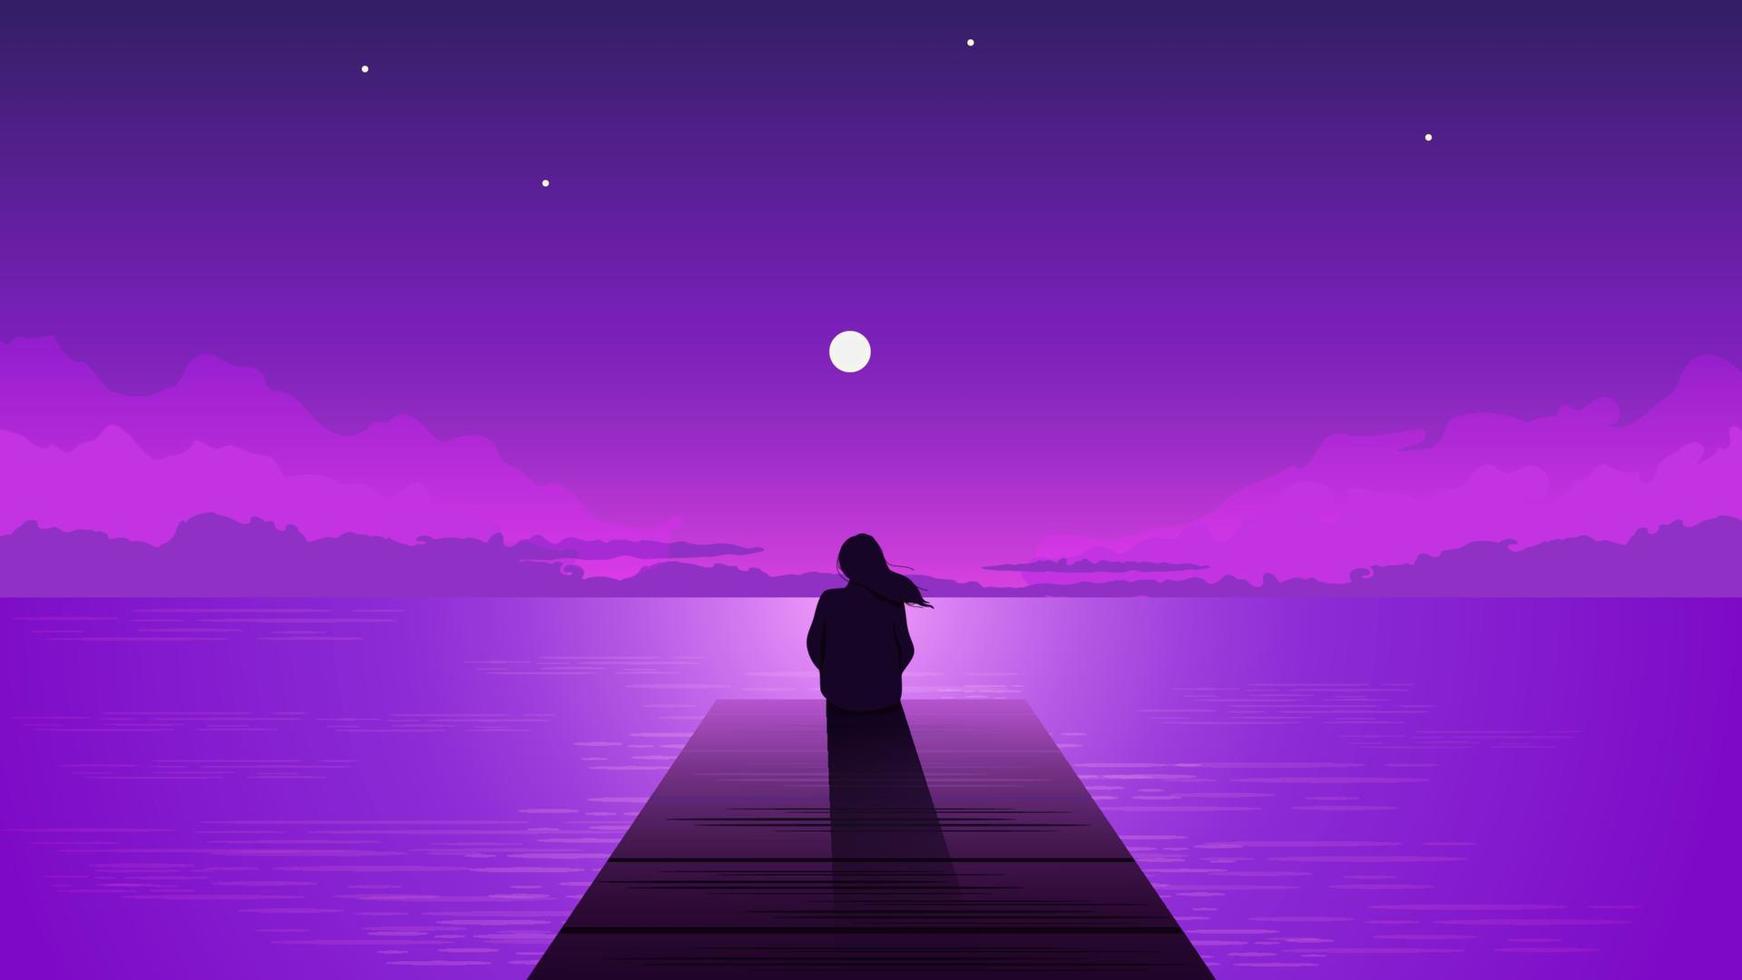 nacht silhouet eenzaam meisje met stijgende lijn maan. alleen dromerig vrouw op zoek Bij Purper lucht met maan tussen wolken Aan zee pier illustratie vector persoon eenzaamheid nadenkend depressie.